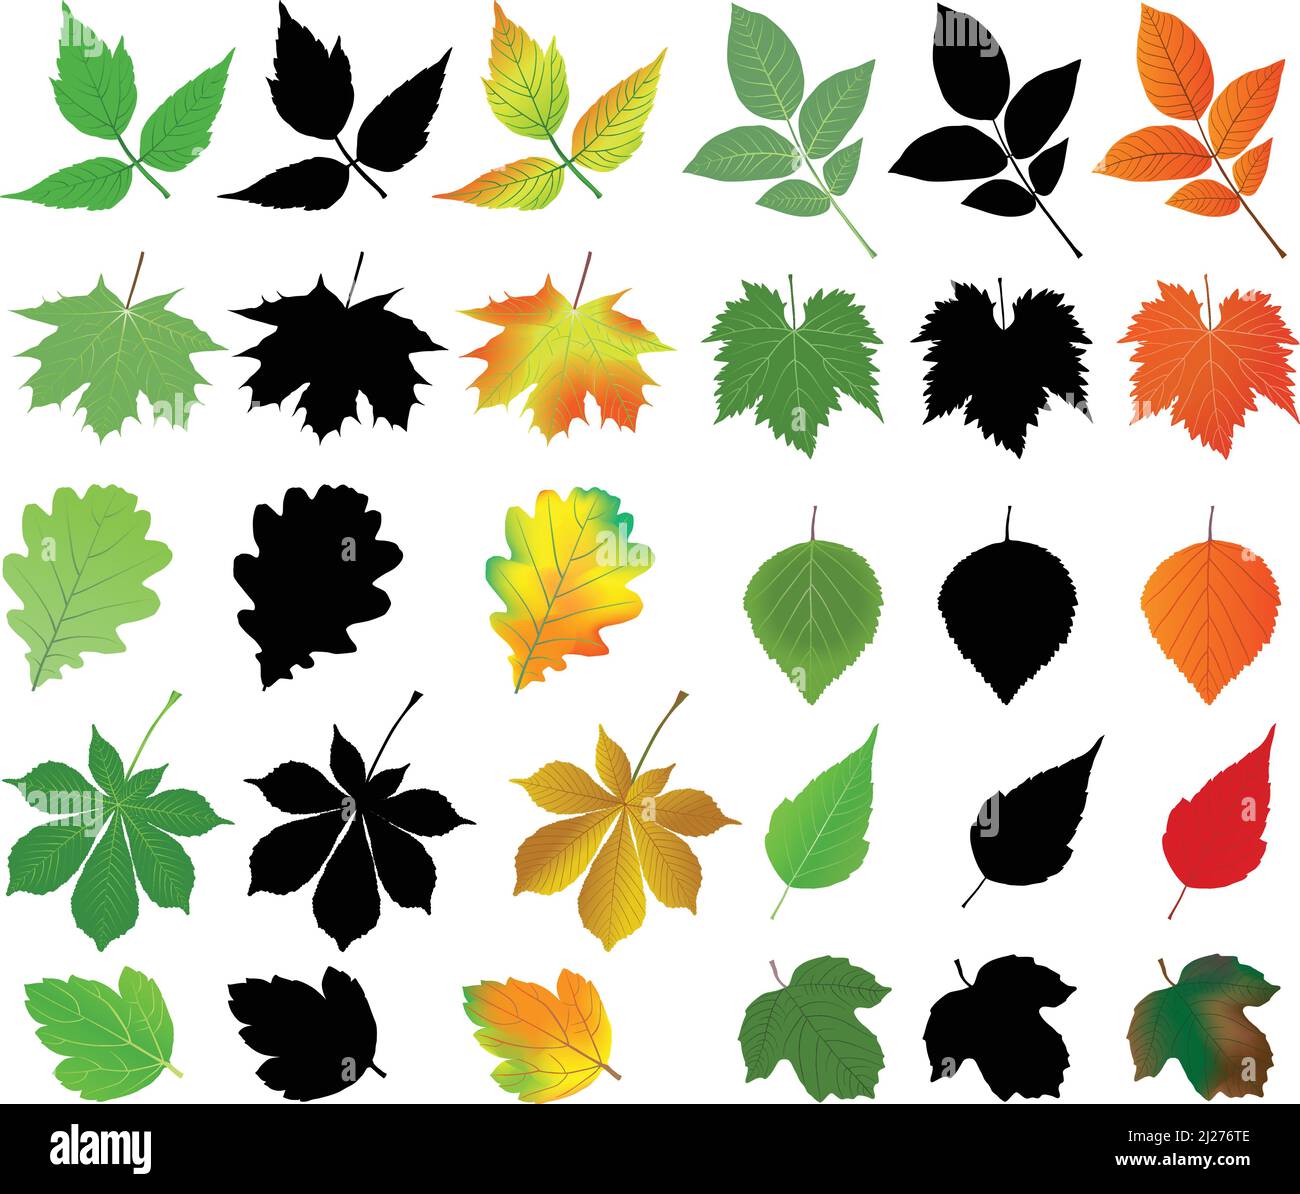 Raccolta di diverse specie di foglie in silhouette e immagini di colore: acero, castagno, betulla, noce, uva Illustrazione Vettoriale